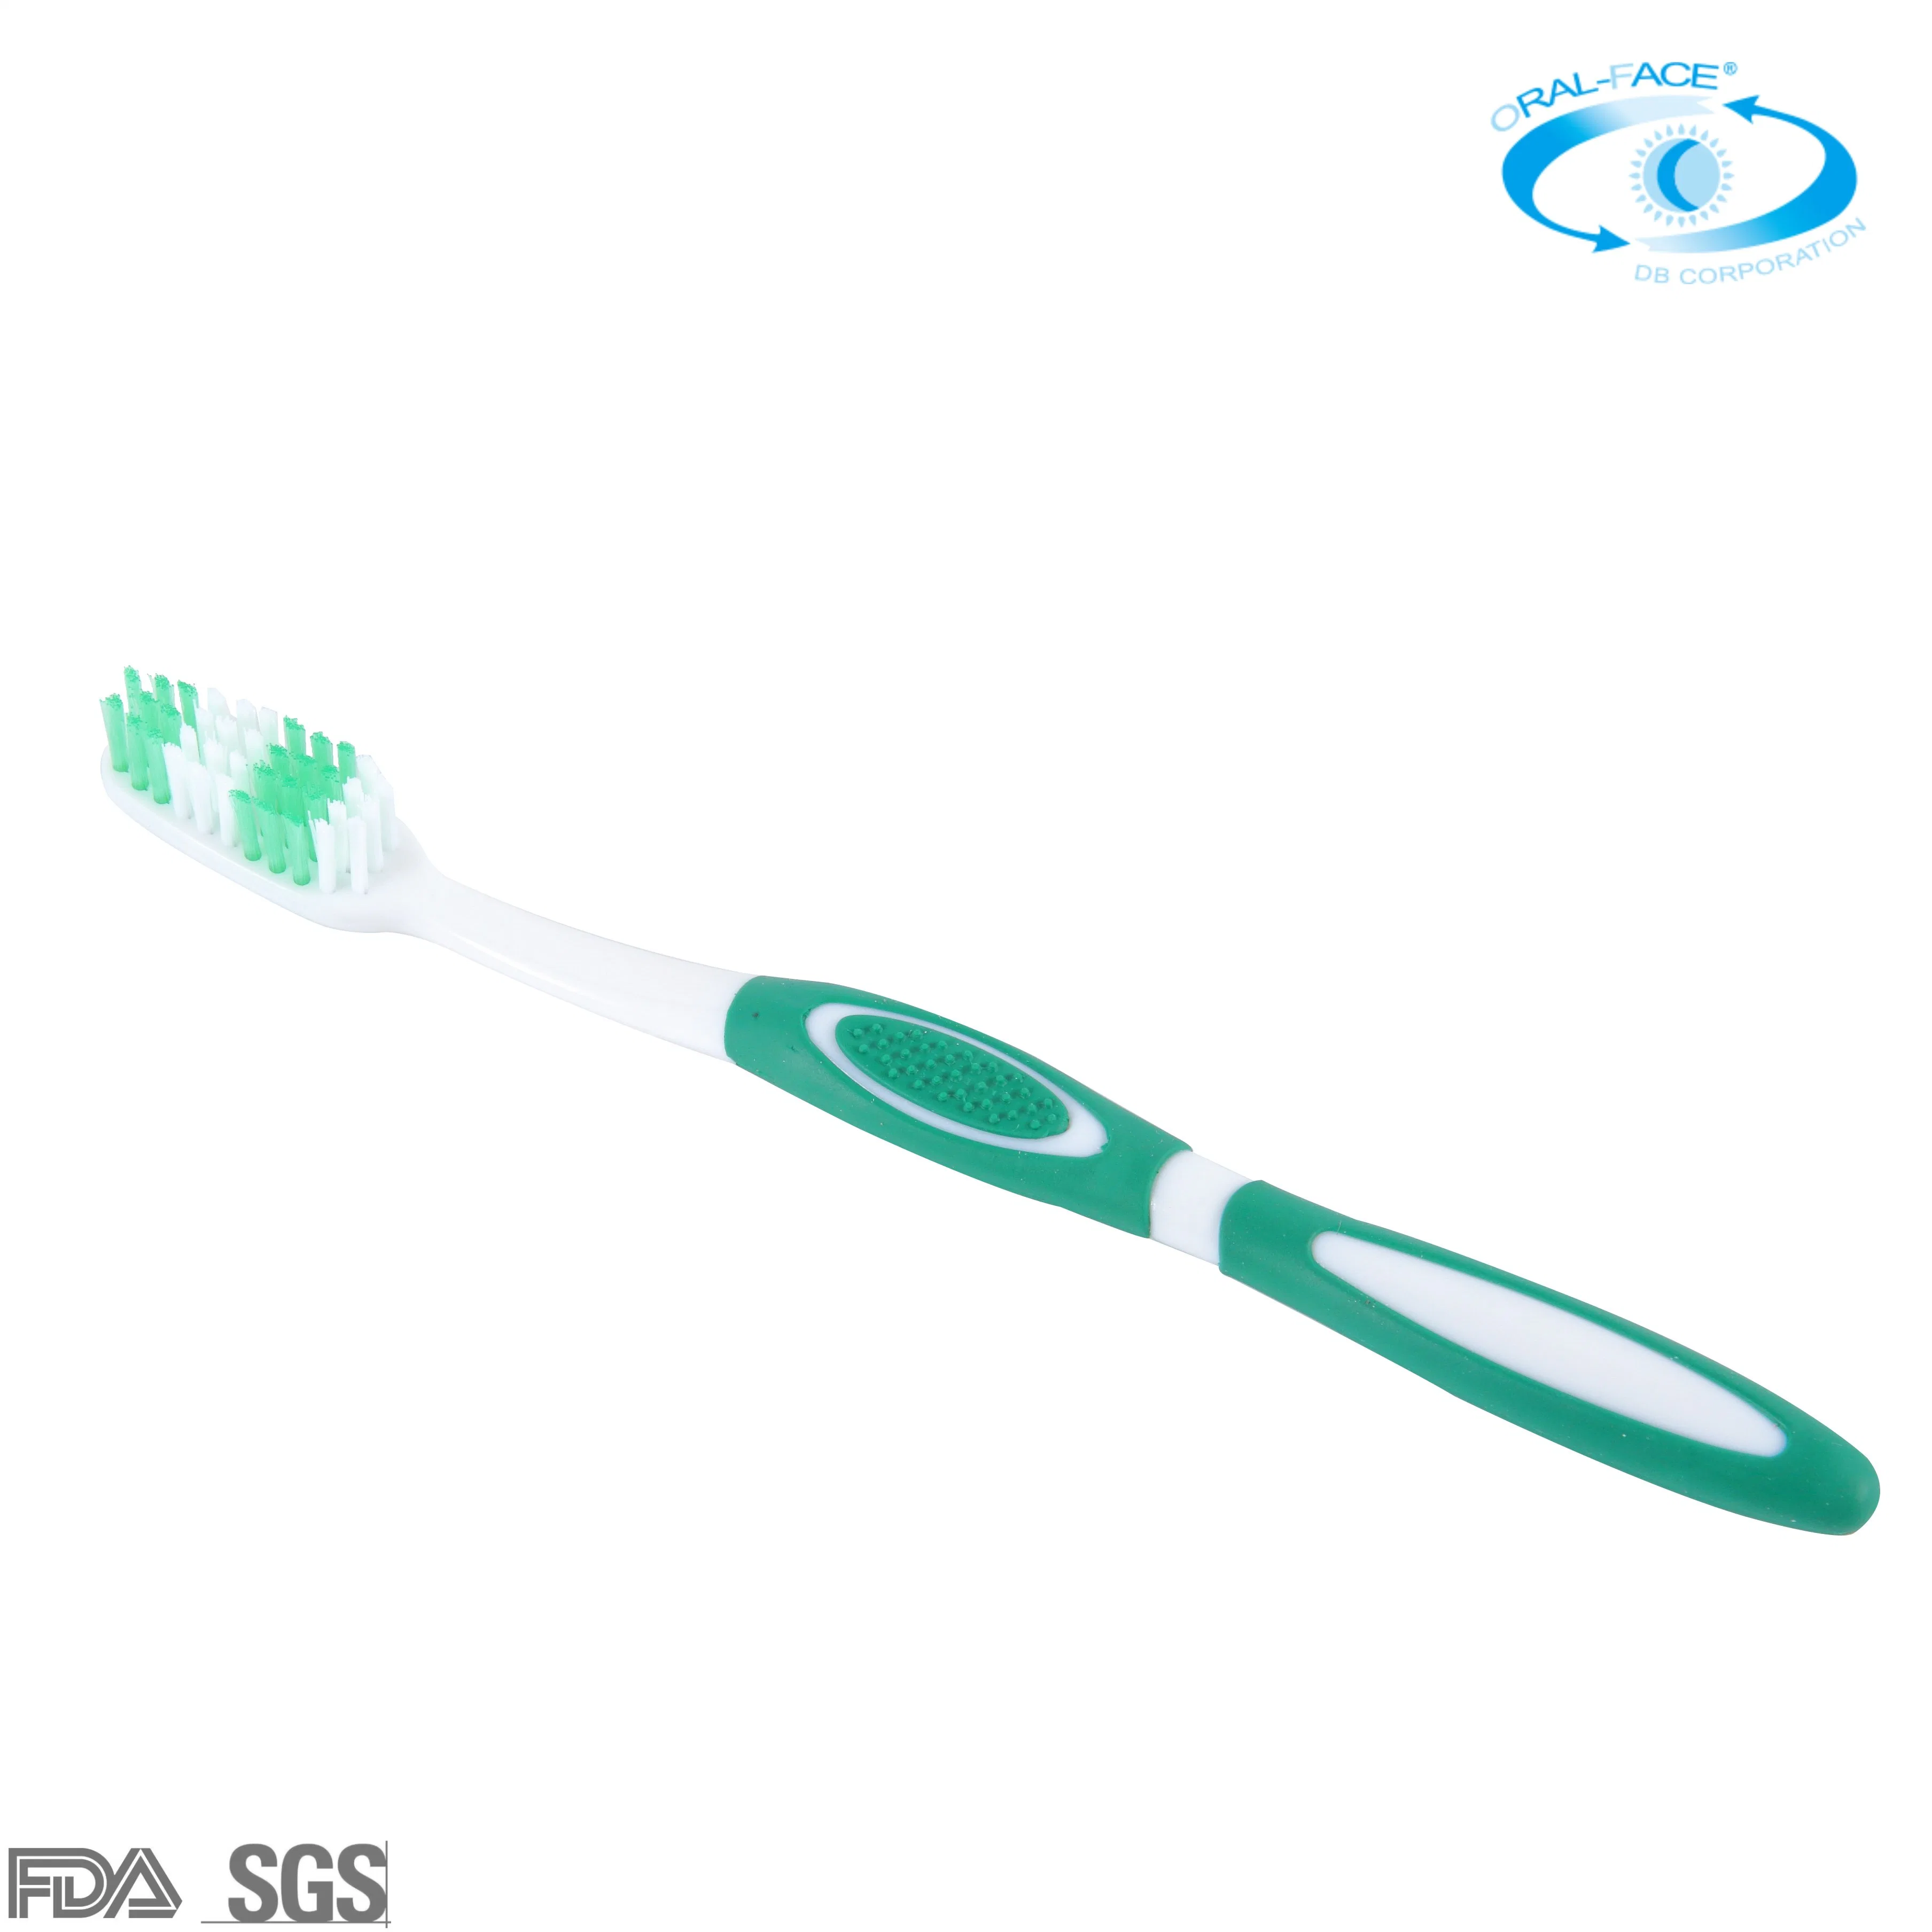 La FDA a approuvé un logo personnalisé sur les délais de livraison brosse à dents manuelle